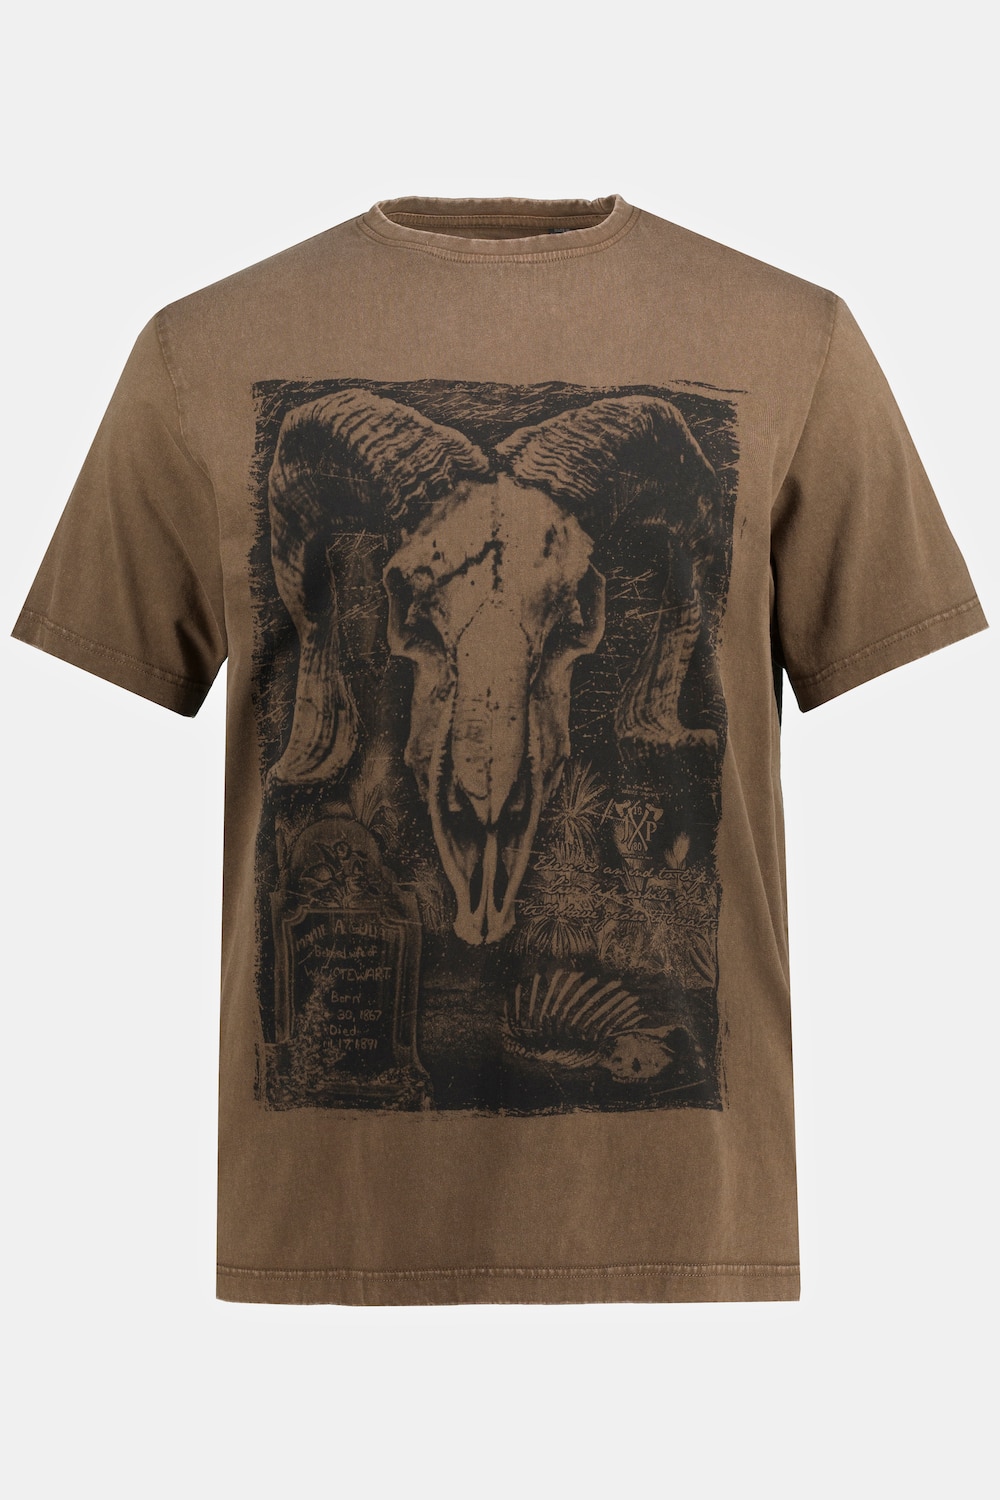 T-Shirt, Große Größen, Herren, braun, Größe: XXL, Baumwolle, JP1880